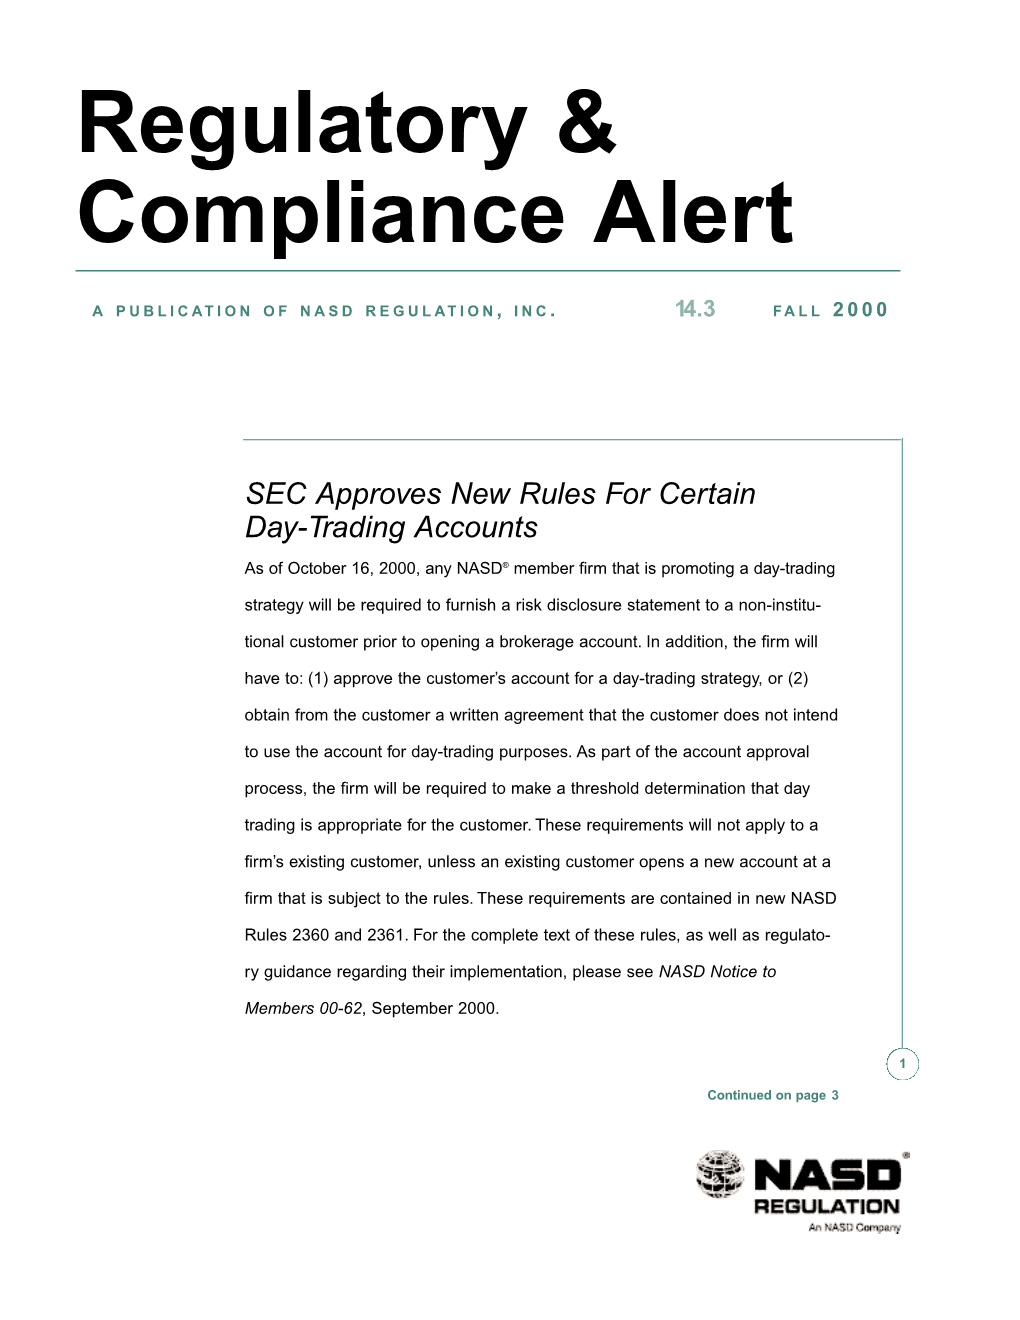 Regulatory & Compliance Alert